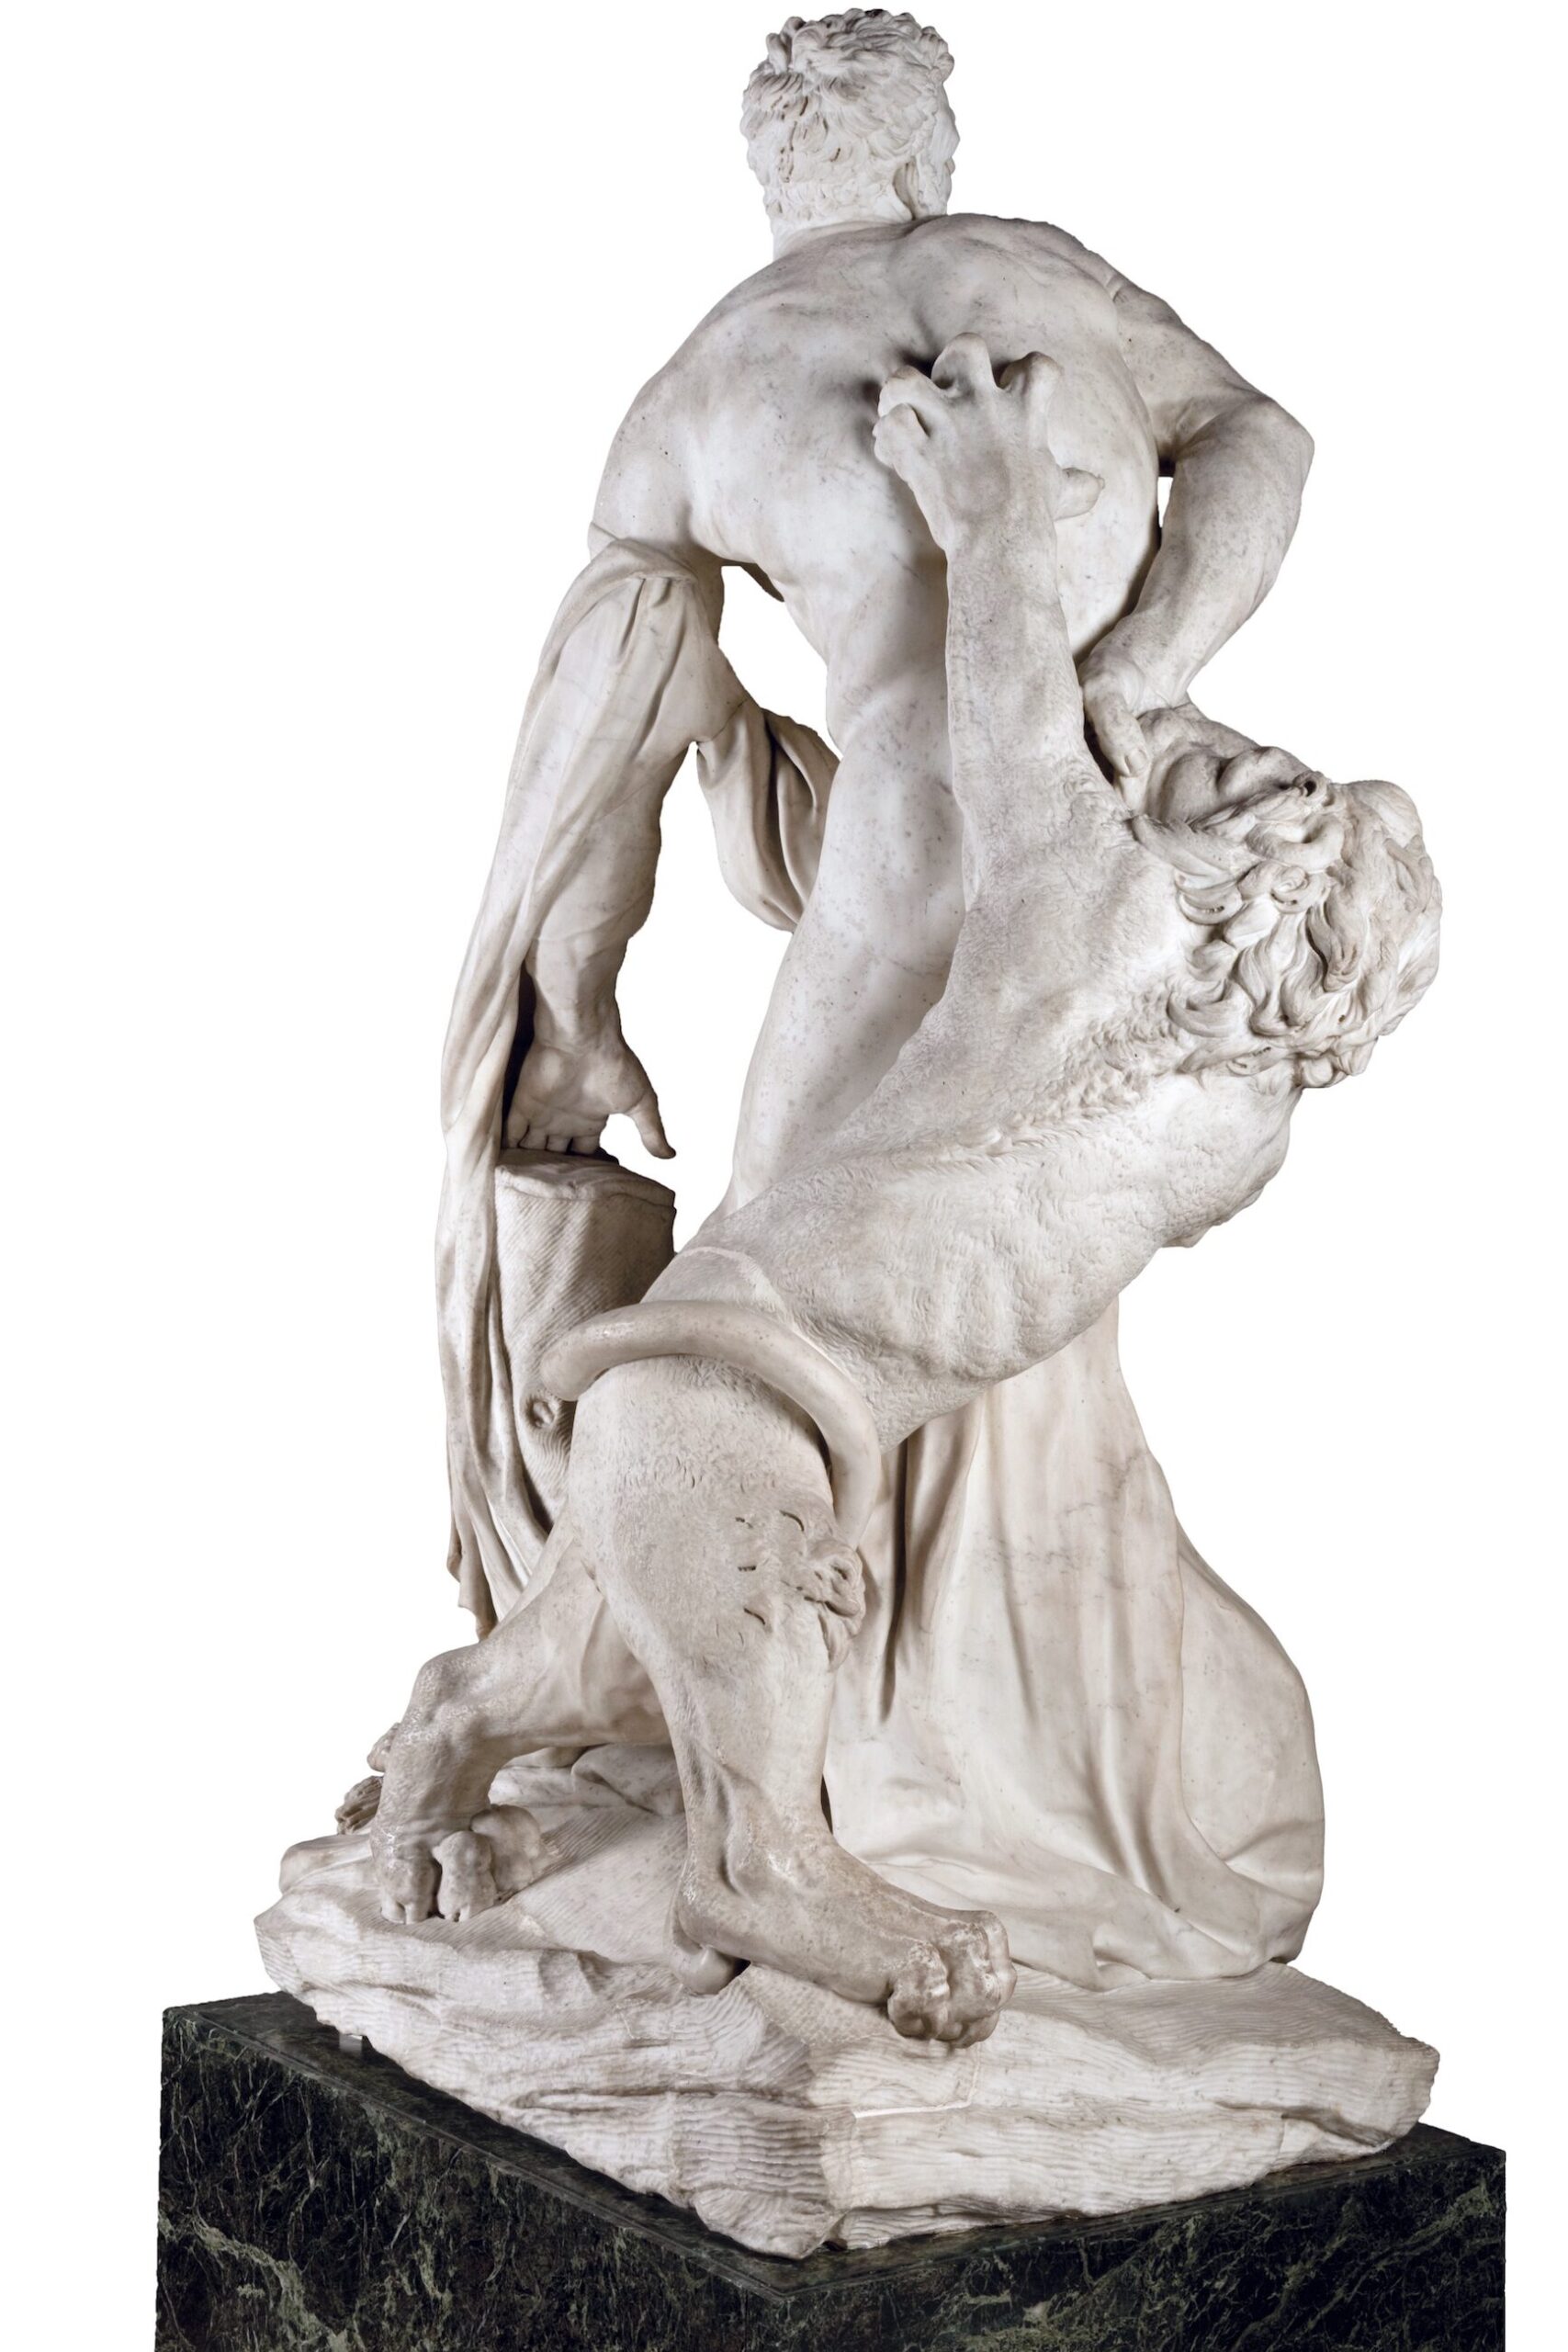 Pierre Puget (1620-1694), Milon de Crotone, 1671‑1682. Marbre de Carrare, 270 x 140 x 91 cm. Paris, département des Sculptures du musée du Louvre. © Musée du Louvre, dist. RMN – P. Fuzeau